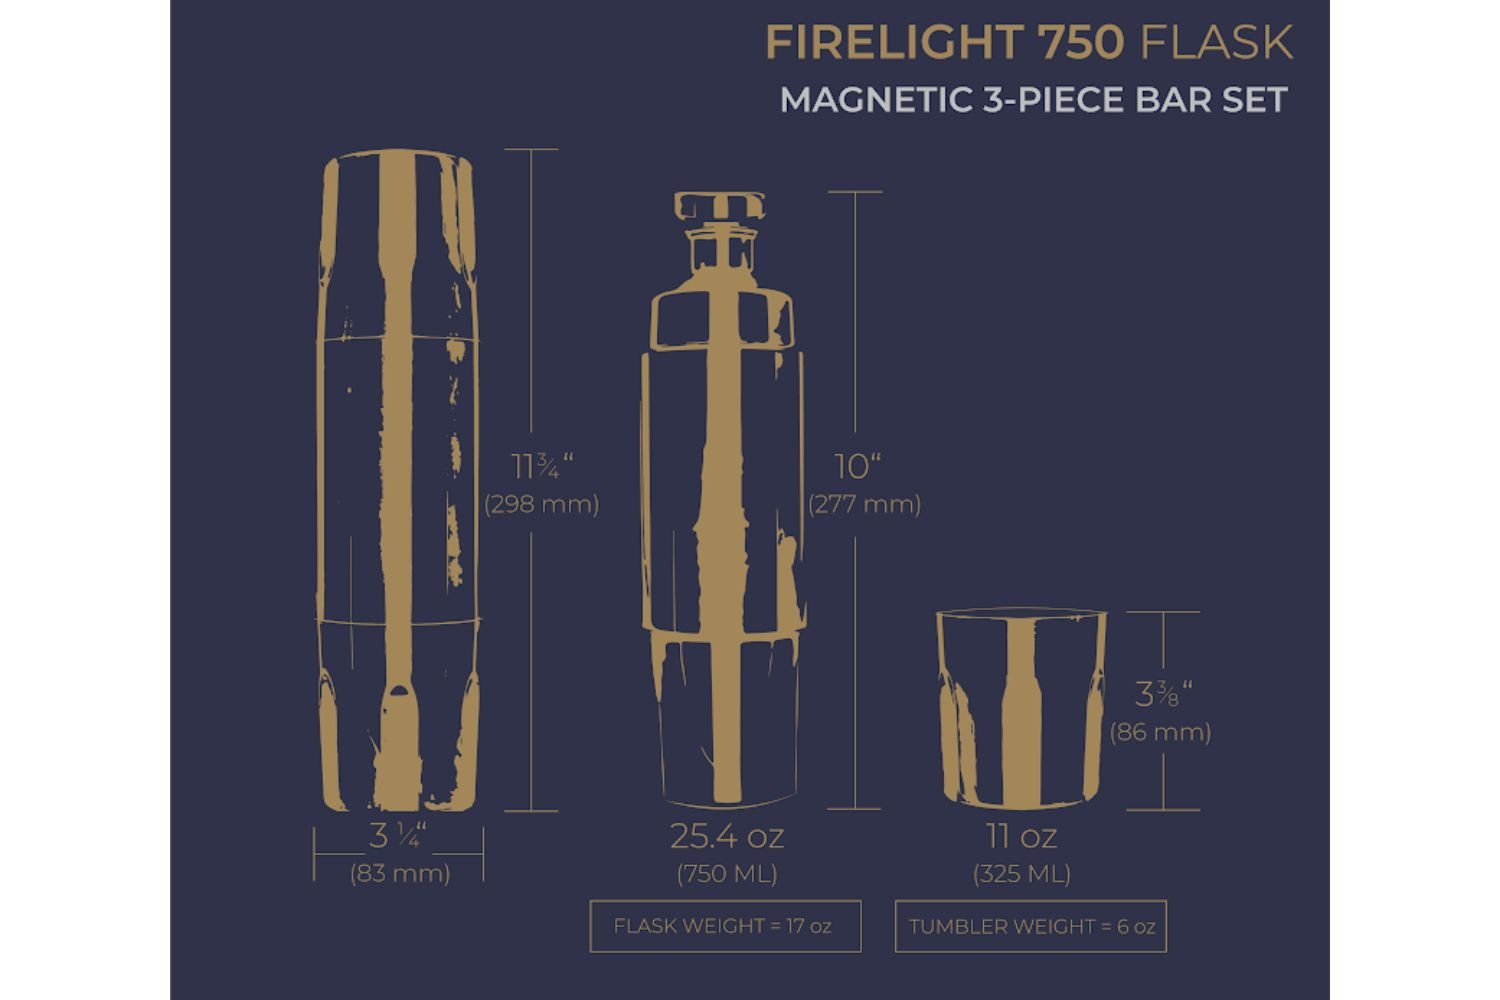 High Camp Flasks 750ml Firelight Flask - Hike & Camp